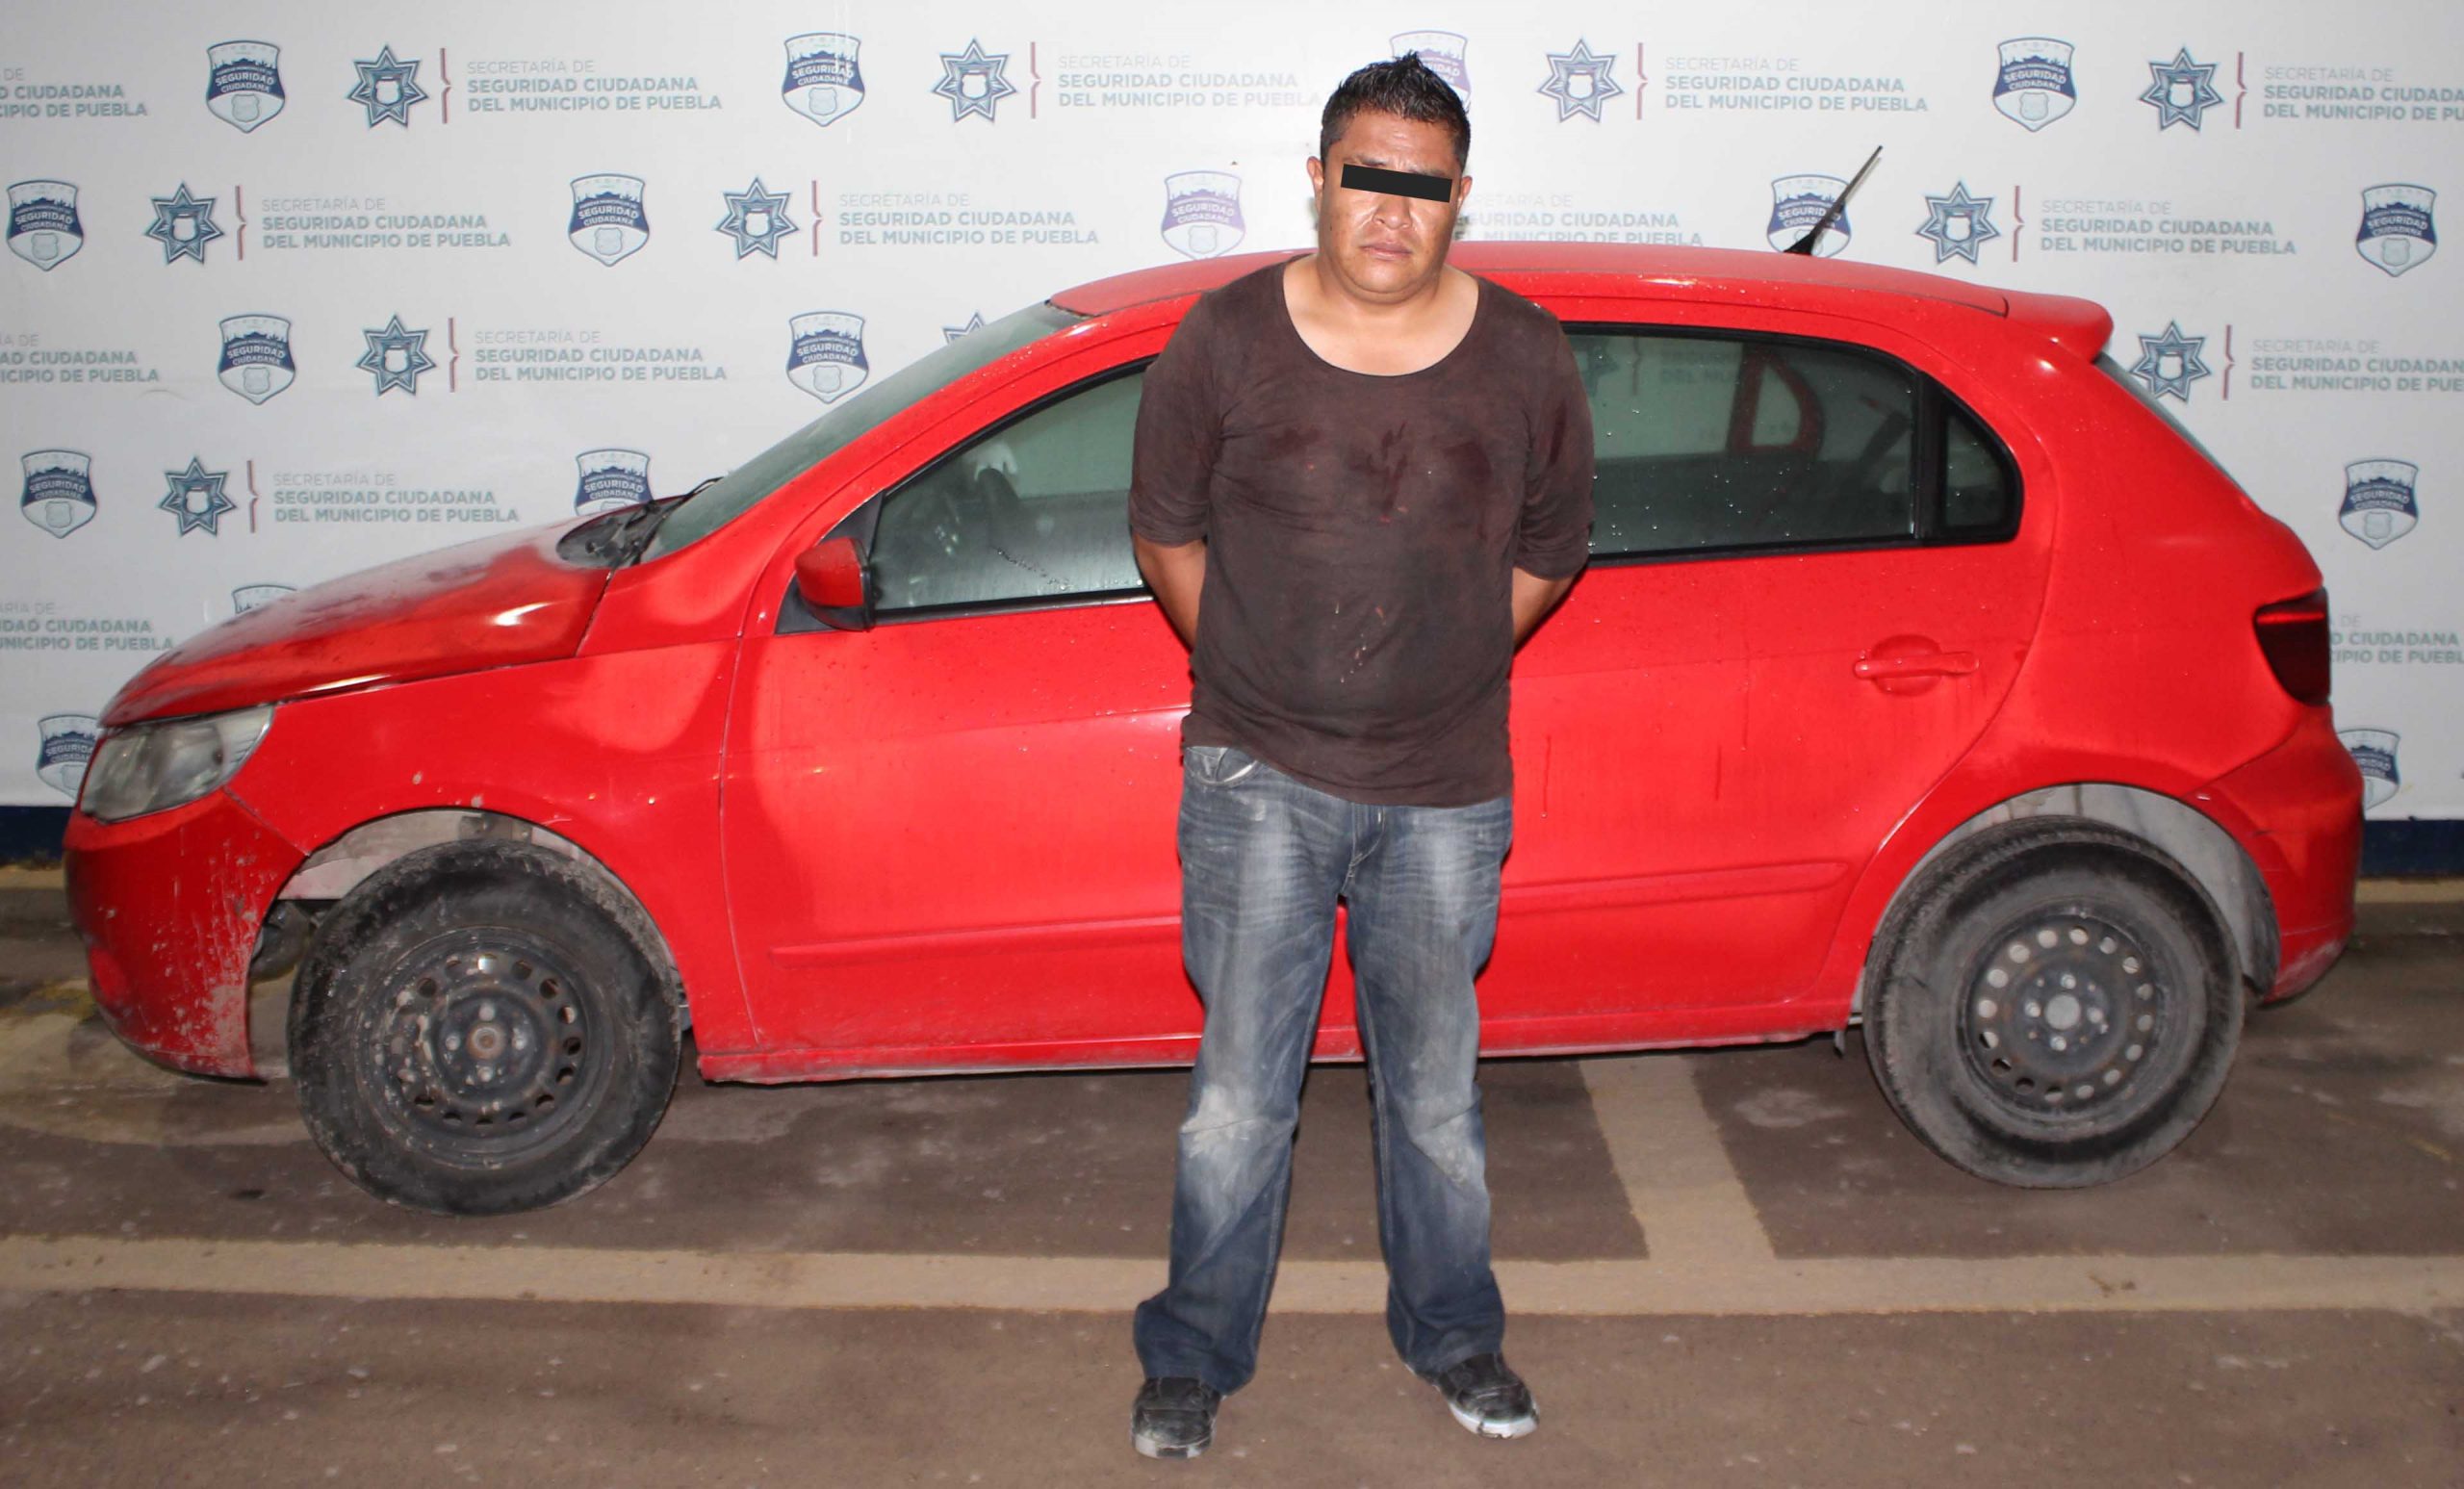 Recuperó policía municipal de Puebla un vehículo robado; hay un detenido